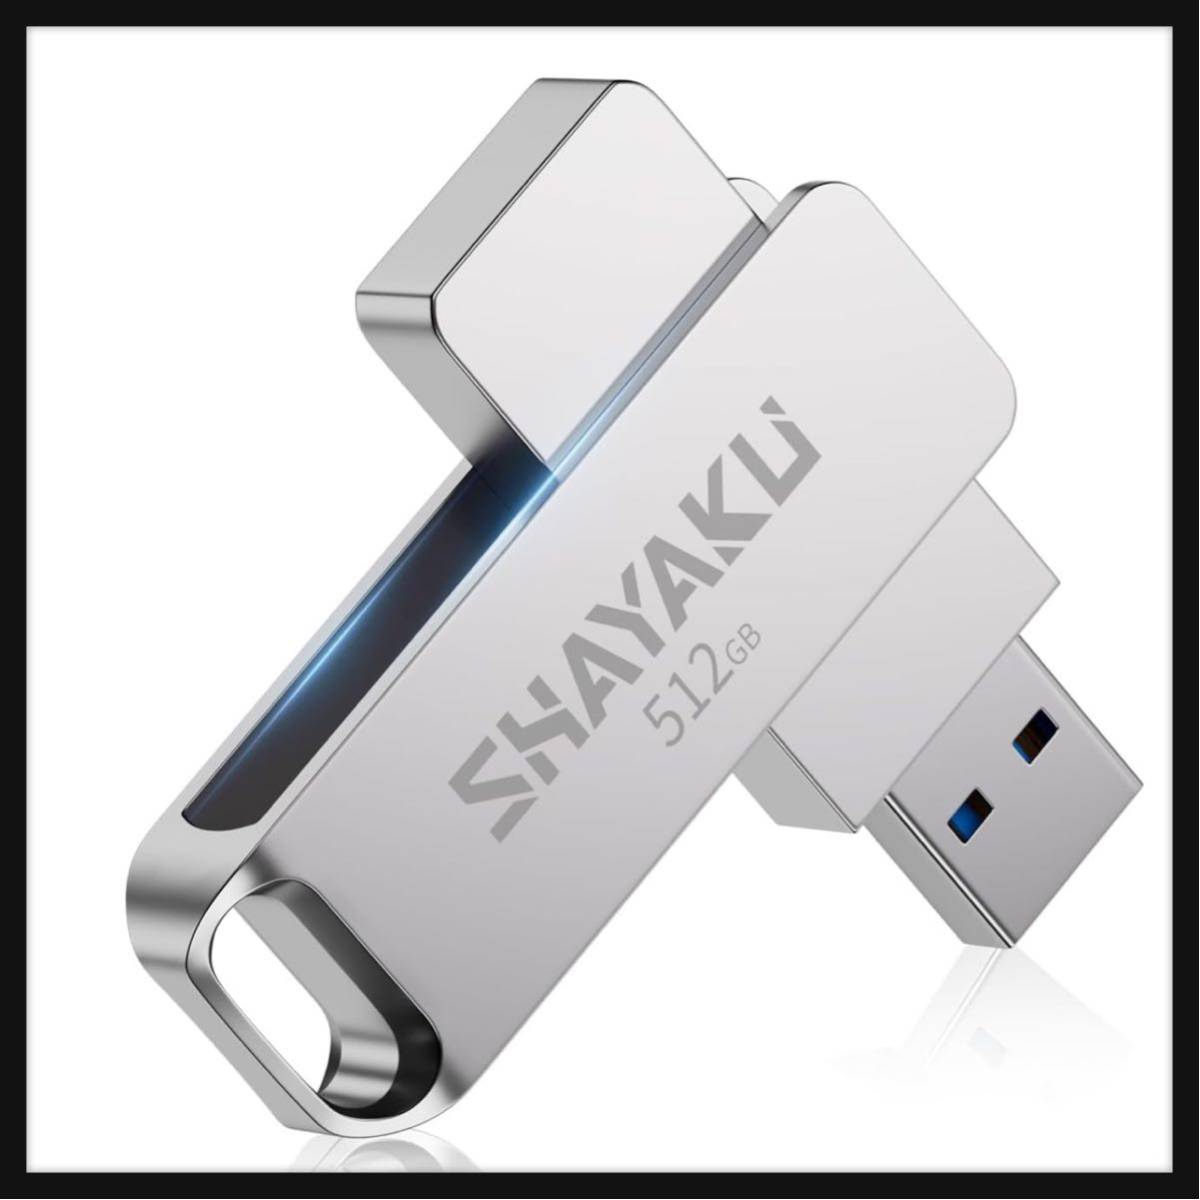 [ вскрыть только ]SHAYAKU *USB память 512gb большая вместимость установленный снаружи маленький размер 360 раз поворотный PC соответствует USB3.0 память сплав производства водонепроницаемый пыленепроницаемый ударопрочный мобильный удобный 